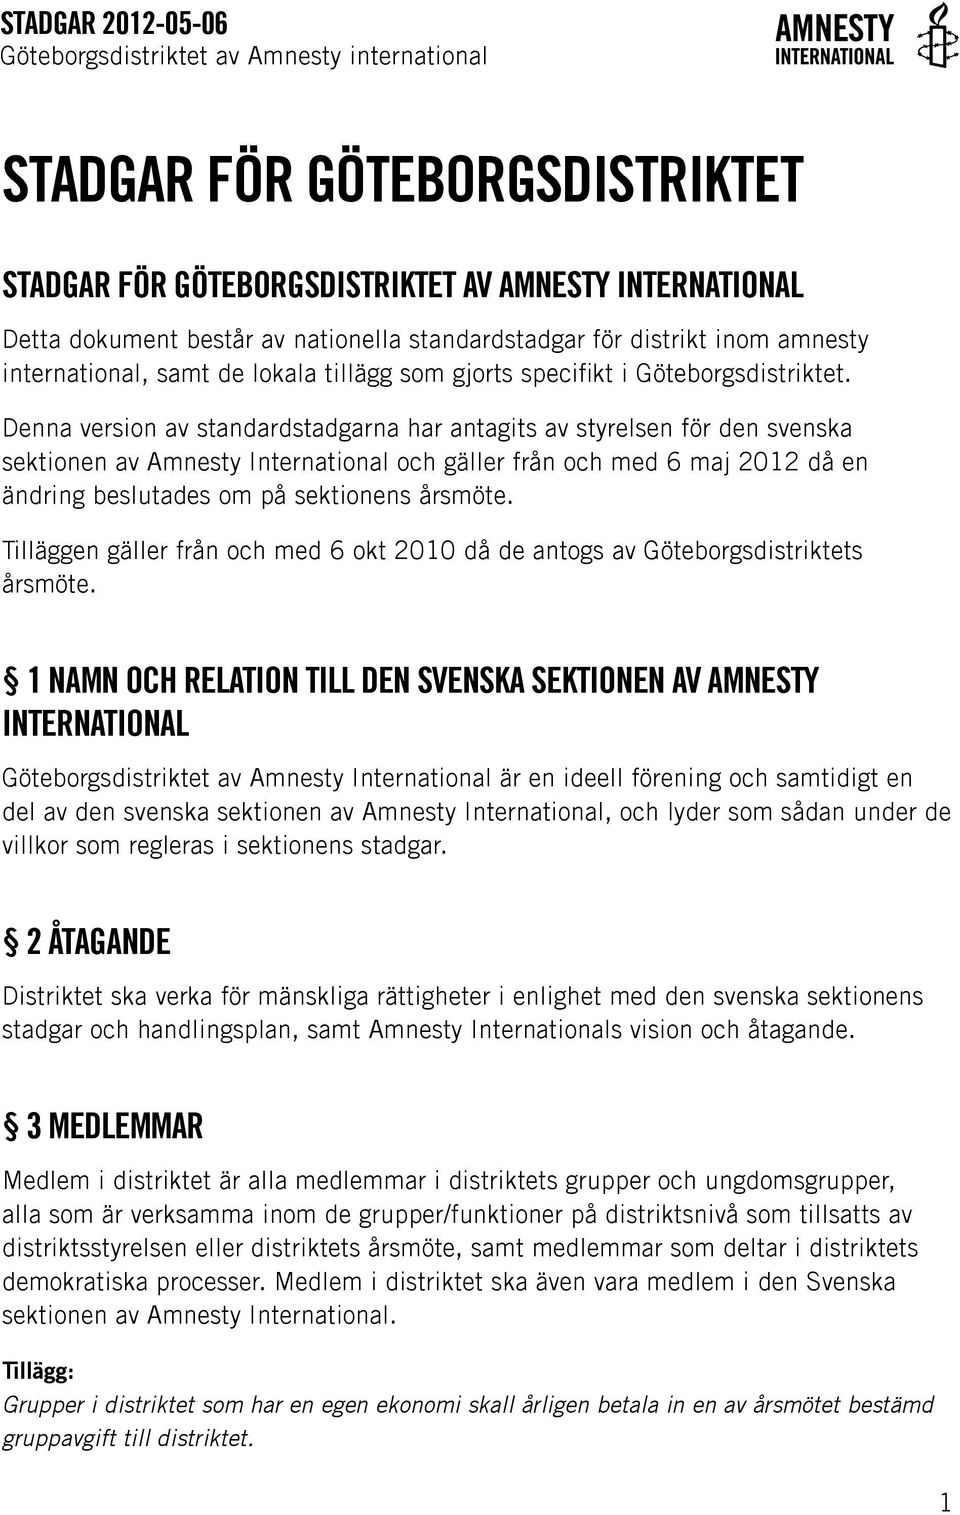 Denna version av standardstadgarna har antagits av styrelsen för den svenska sektionen av Amnesty International och gäller från och med 6 maj 2012 då en ändring beslutades om på sektionens årsmöte.